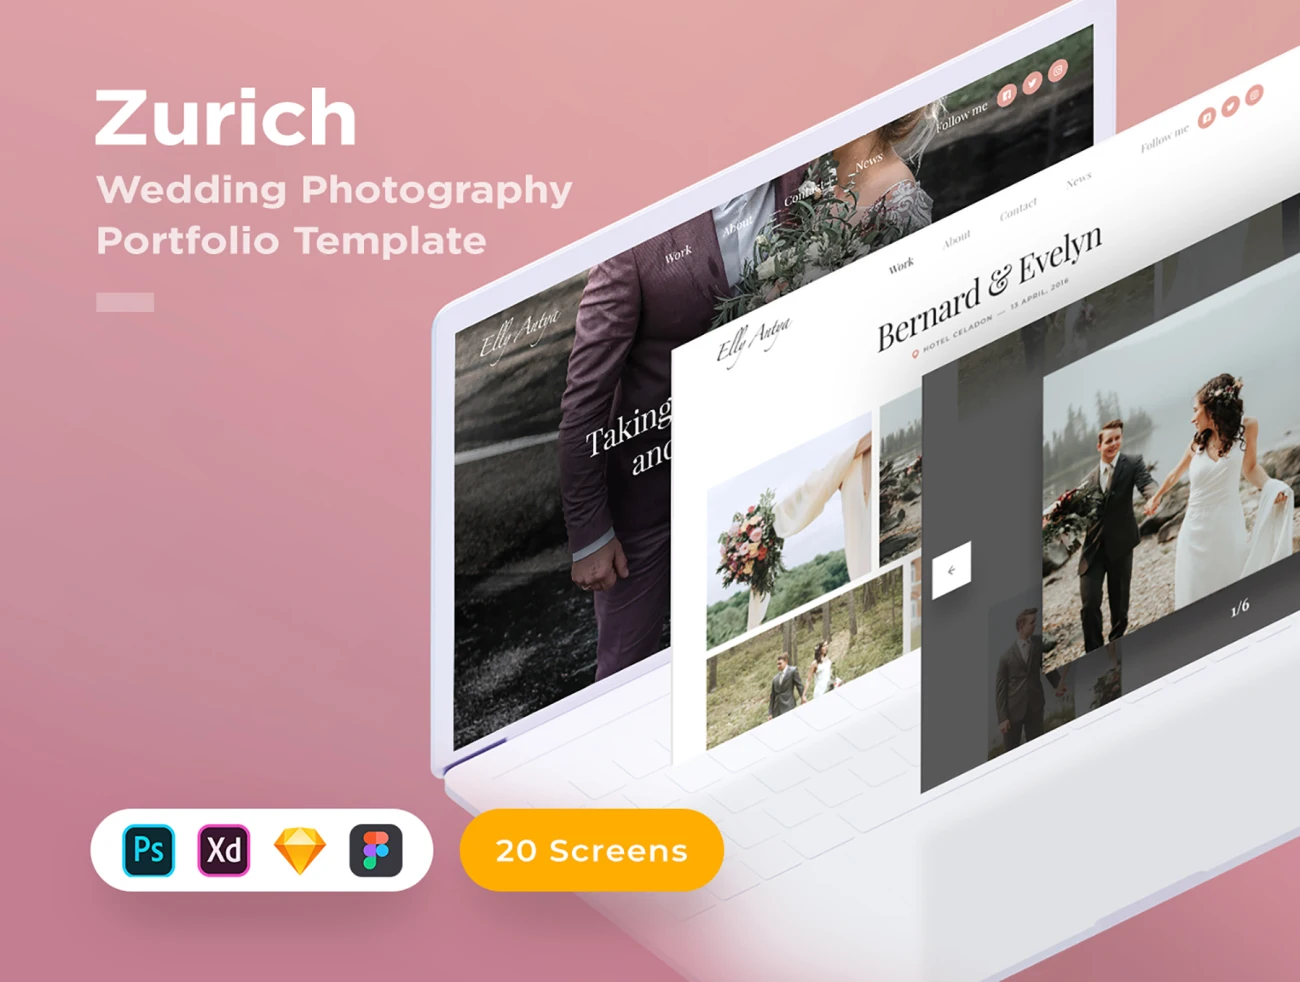 Zurich - Wedding Template 多套多平台适配浪漫婚礼网站模板-专题页面-到位啦UI